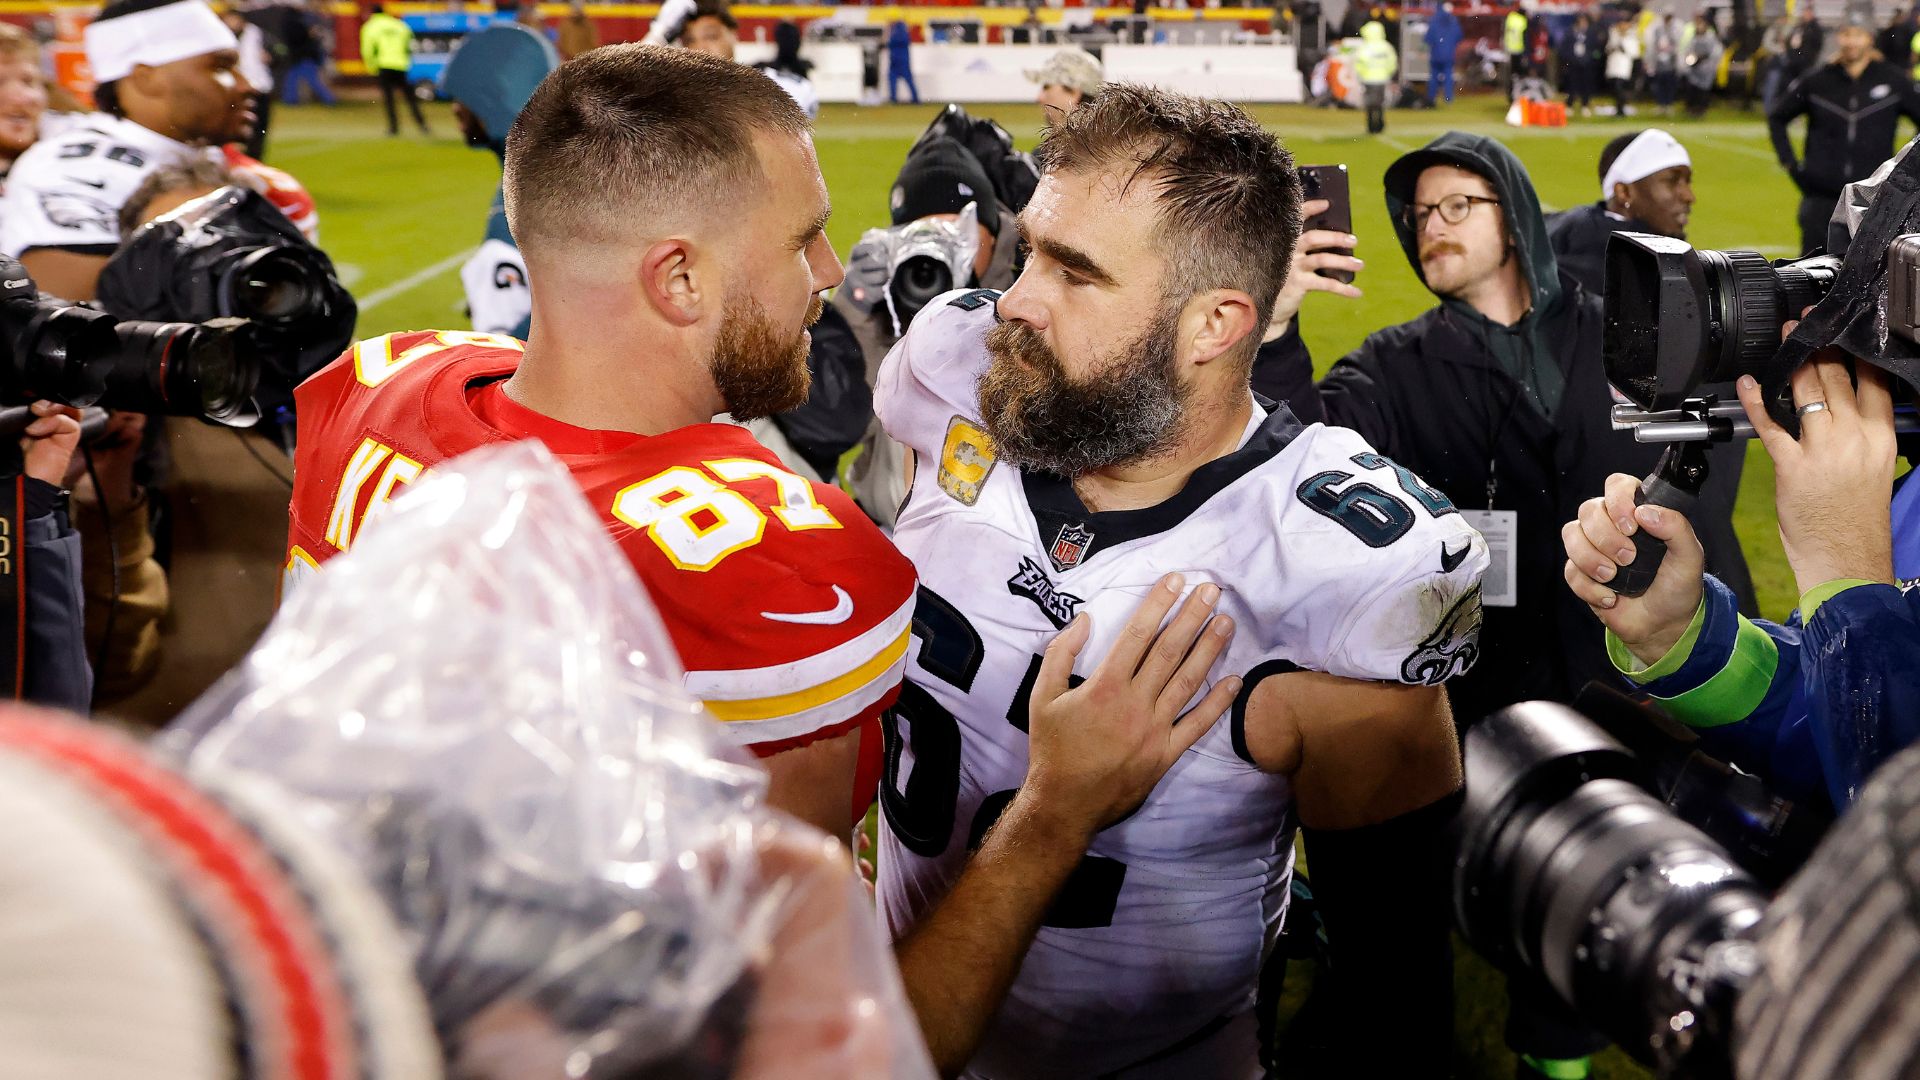 Abraço entre Travis e Jason no último confronto entre os dois na NFL (Crédito: Getty Images)